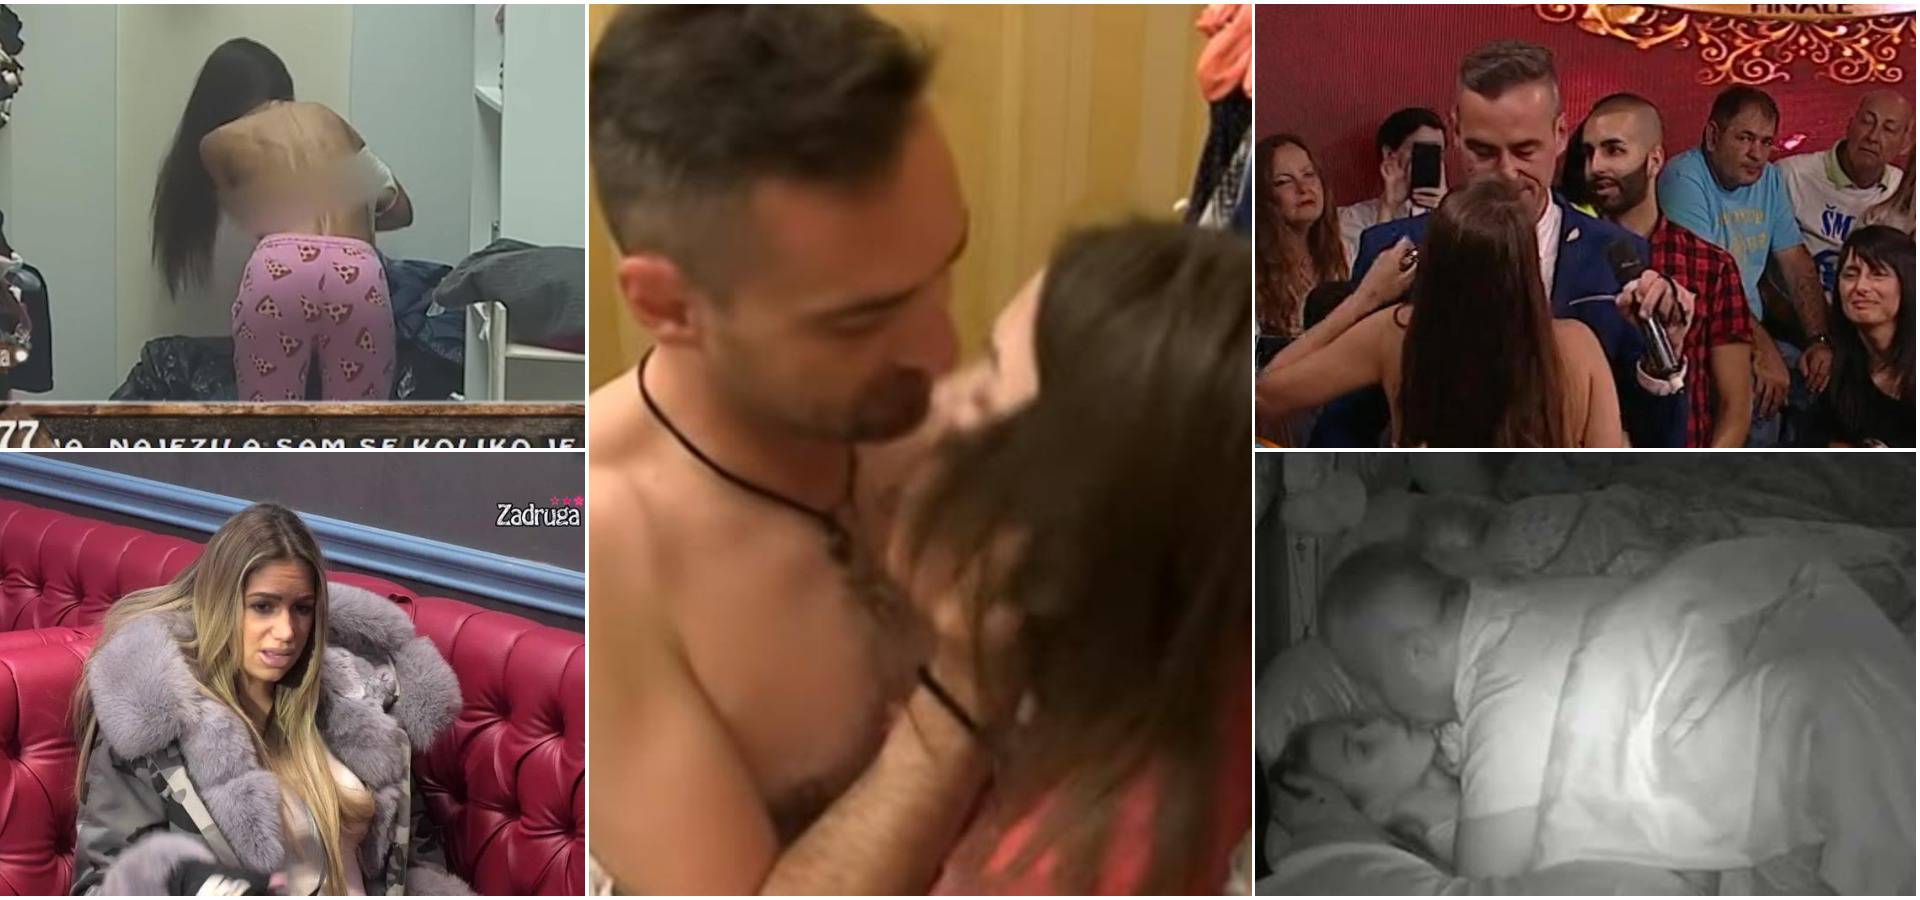 'Dobijemo 1000 eura za seks ispred kamera u reality showu'